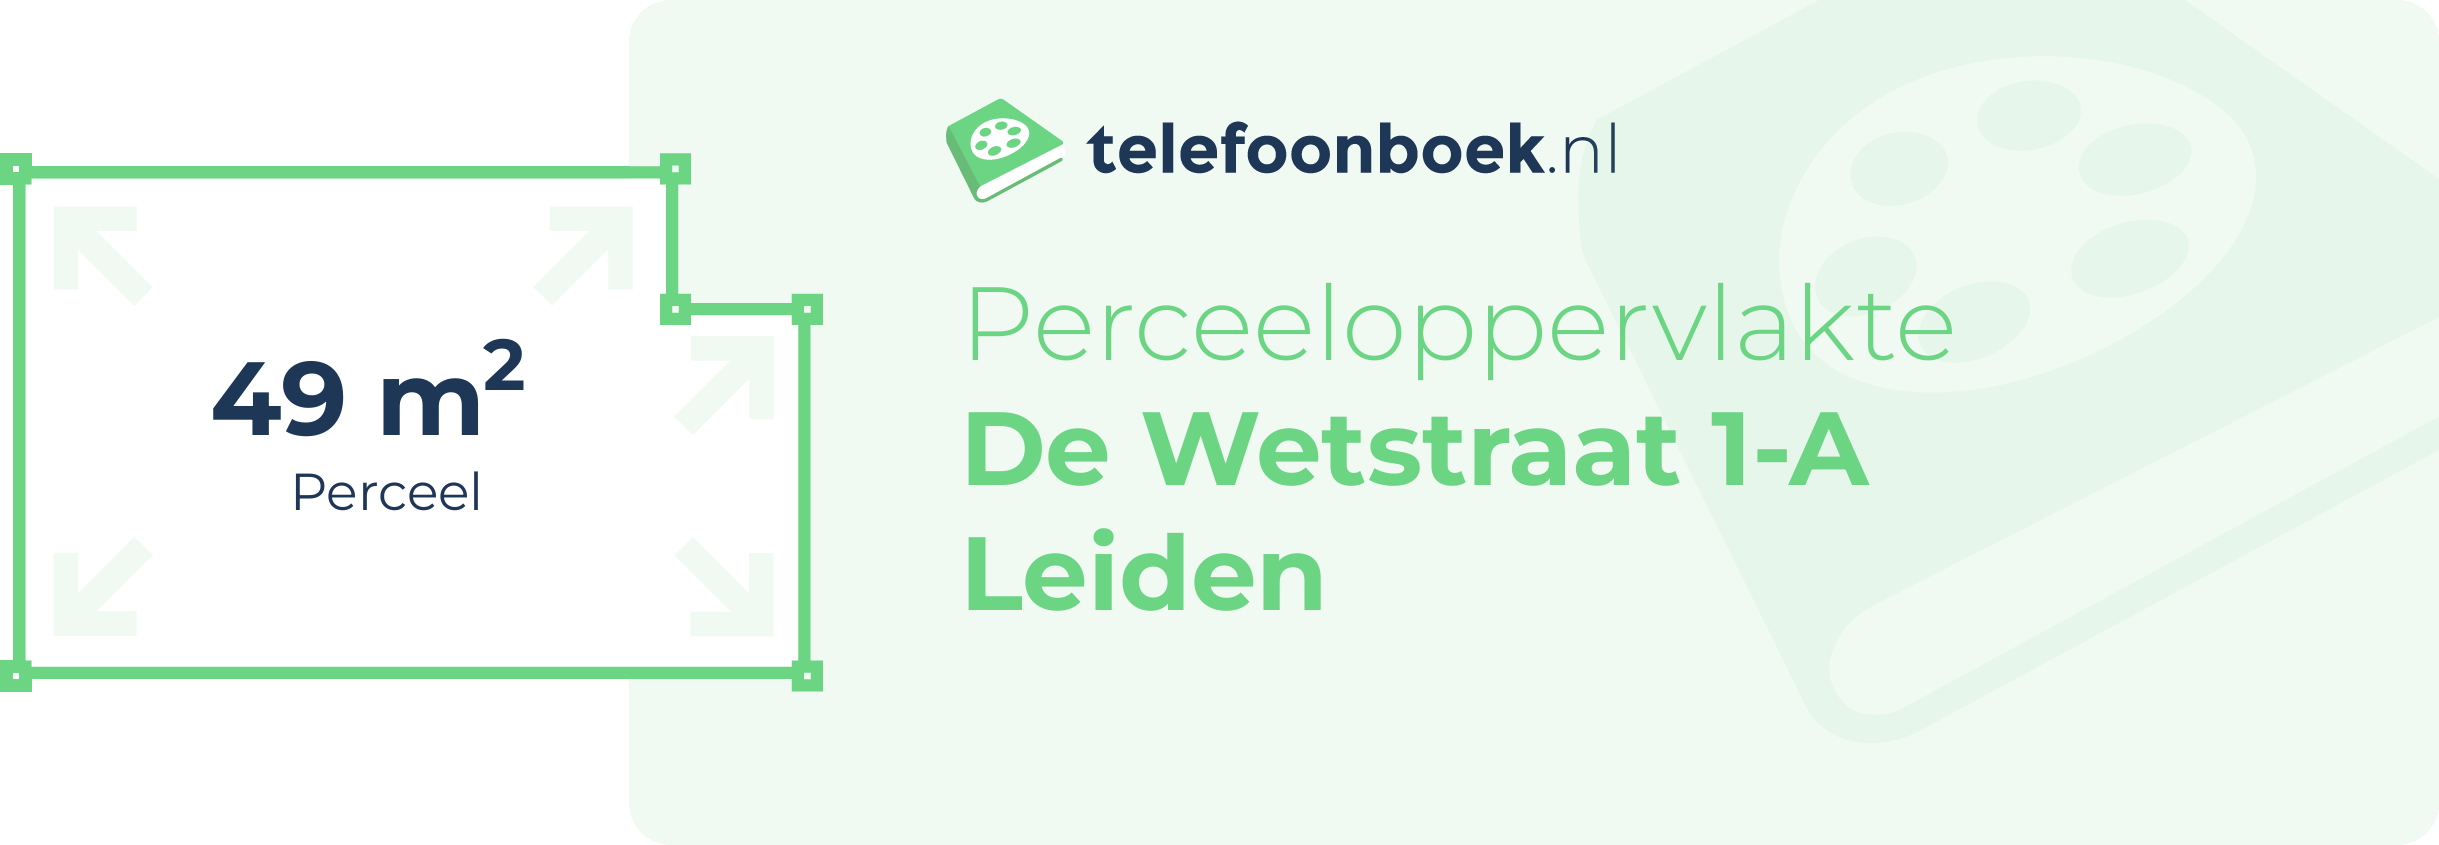 Perceeloppervlakte De Wetstraat 1-A Leiden